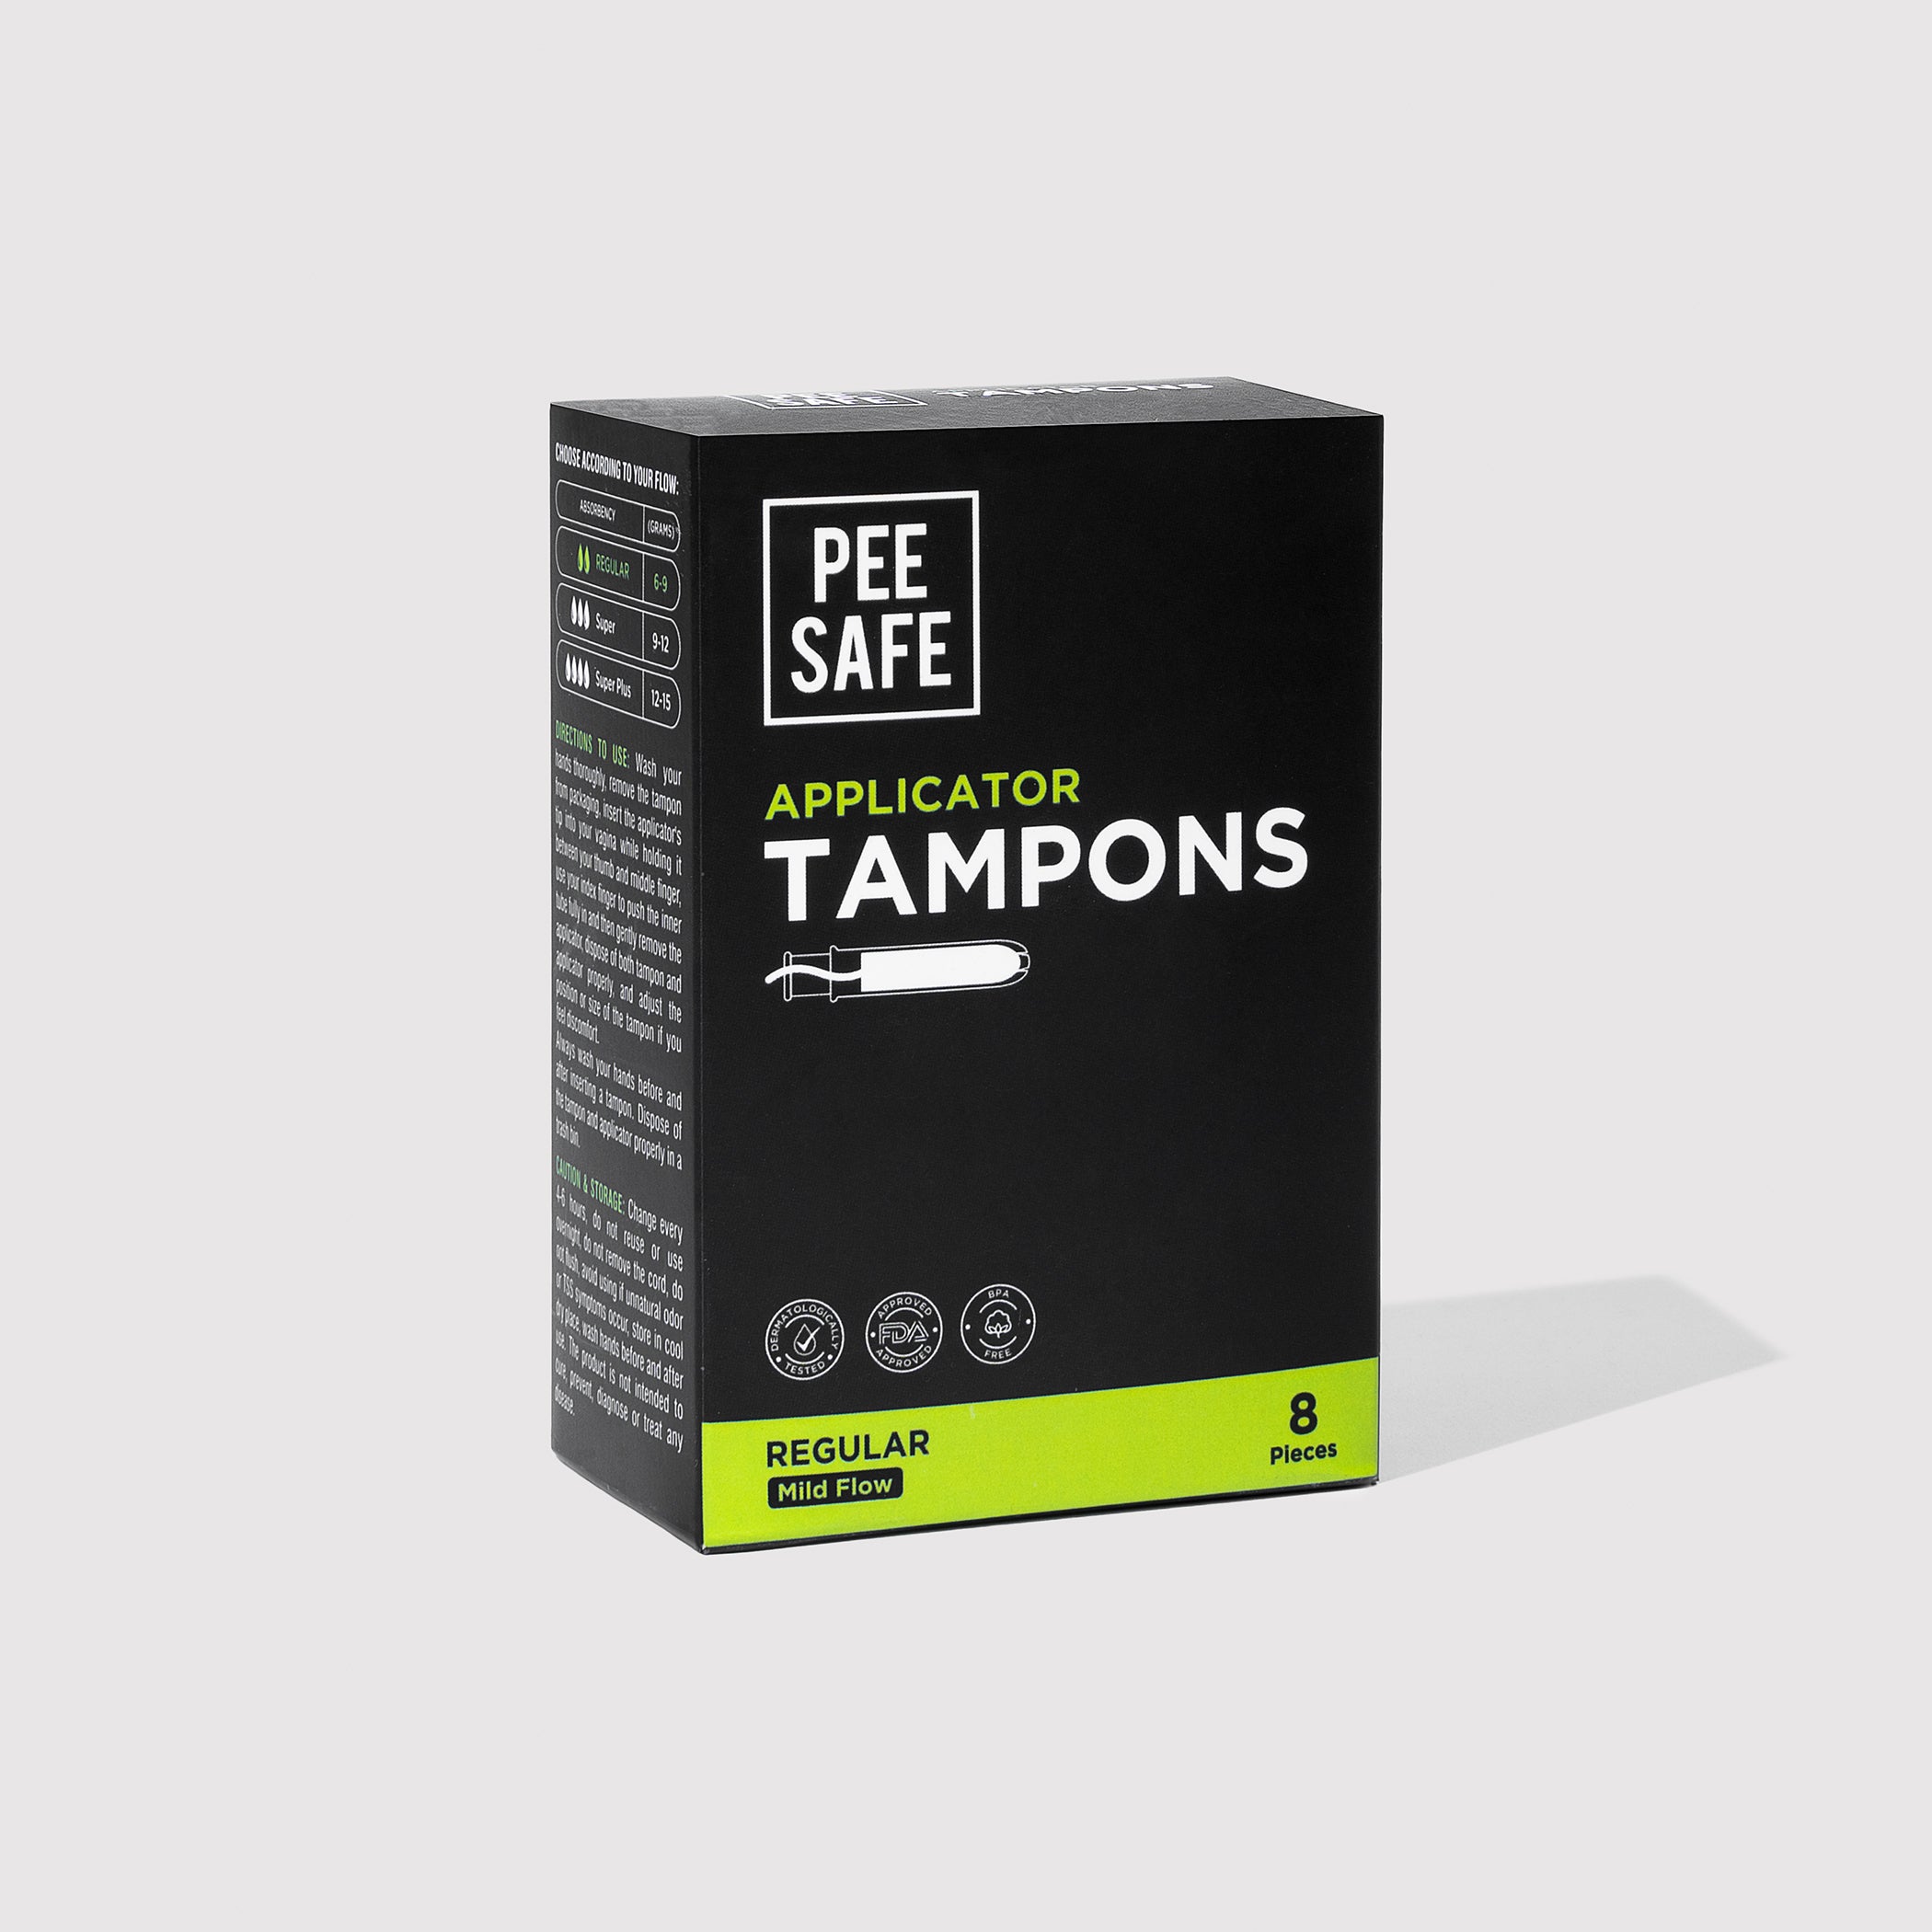 Pee Safe Applicator Tampons - Regular (8 Tampons)